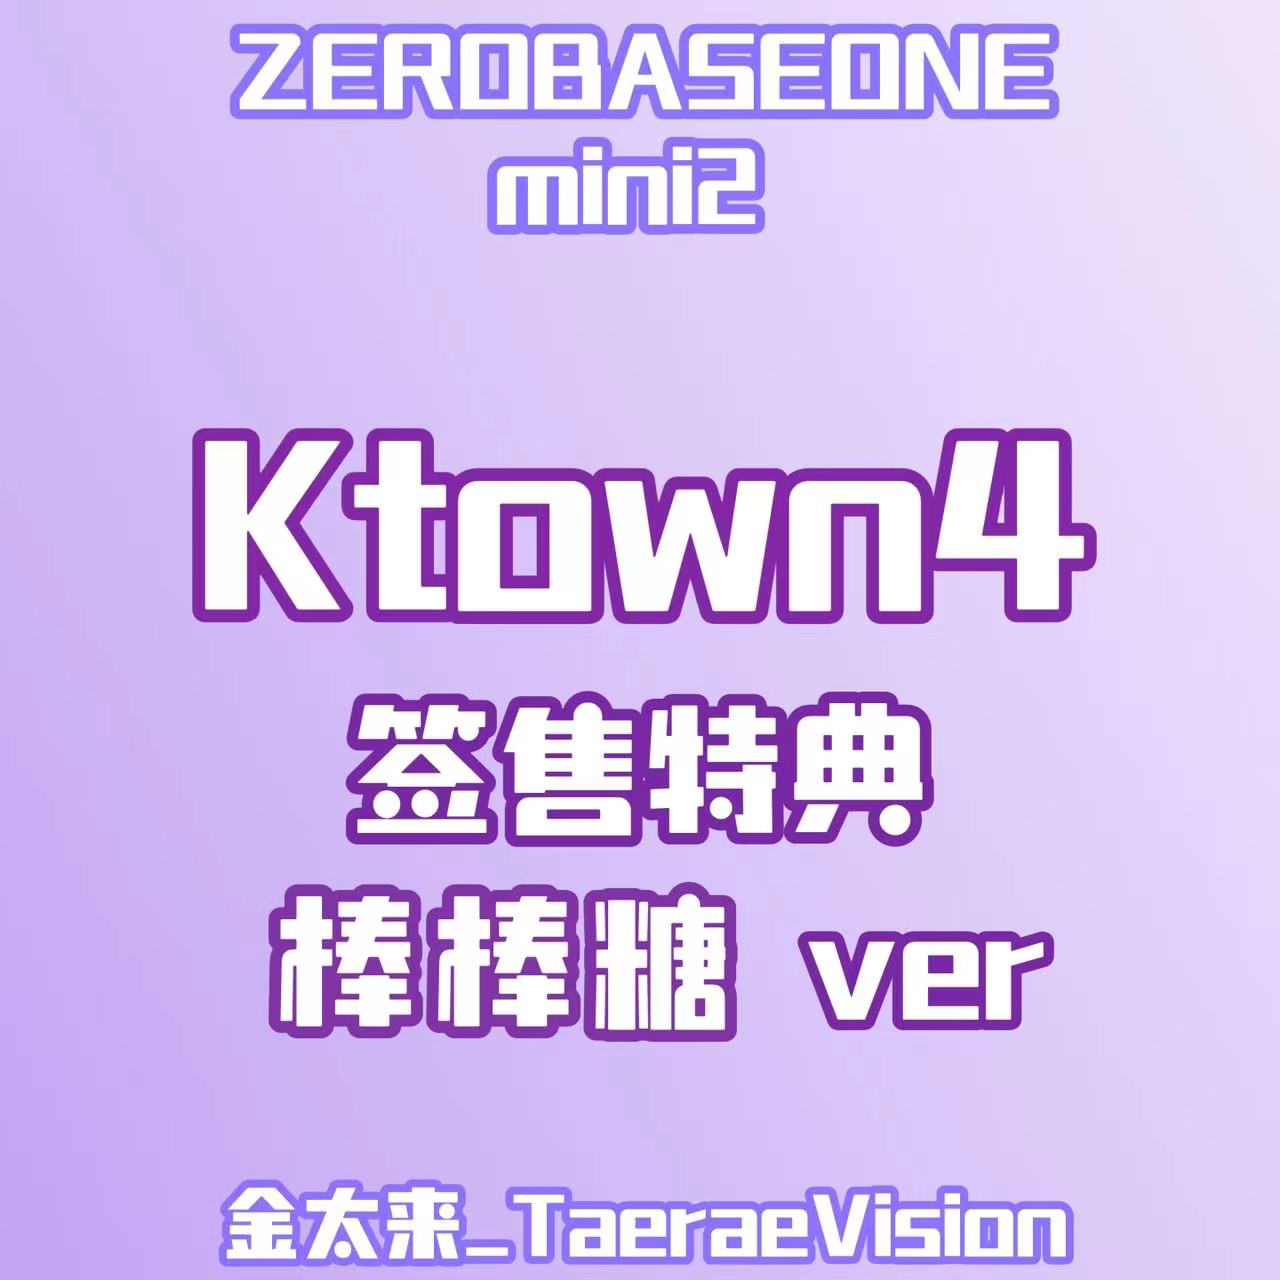 [全款 裸专] [4th] [视频签售活动] [KIM TAERAE] ZEROBASEONE - The 2nd Mini Album [MELTING POINT] (Random Ver.)_金太来_TaeraeVision